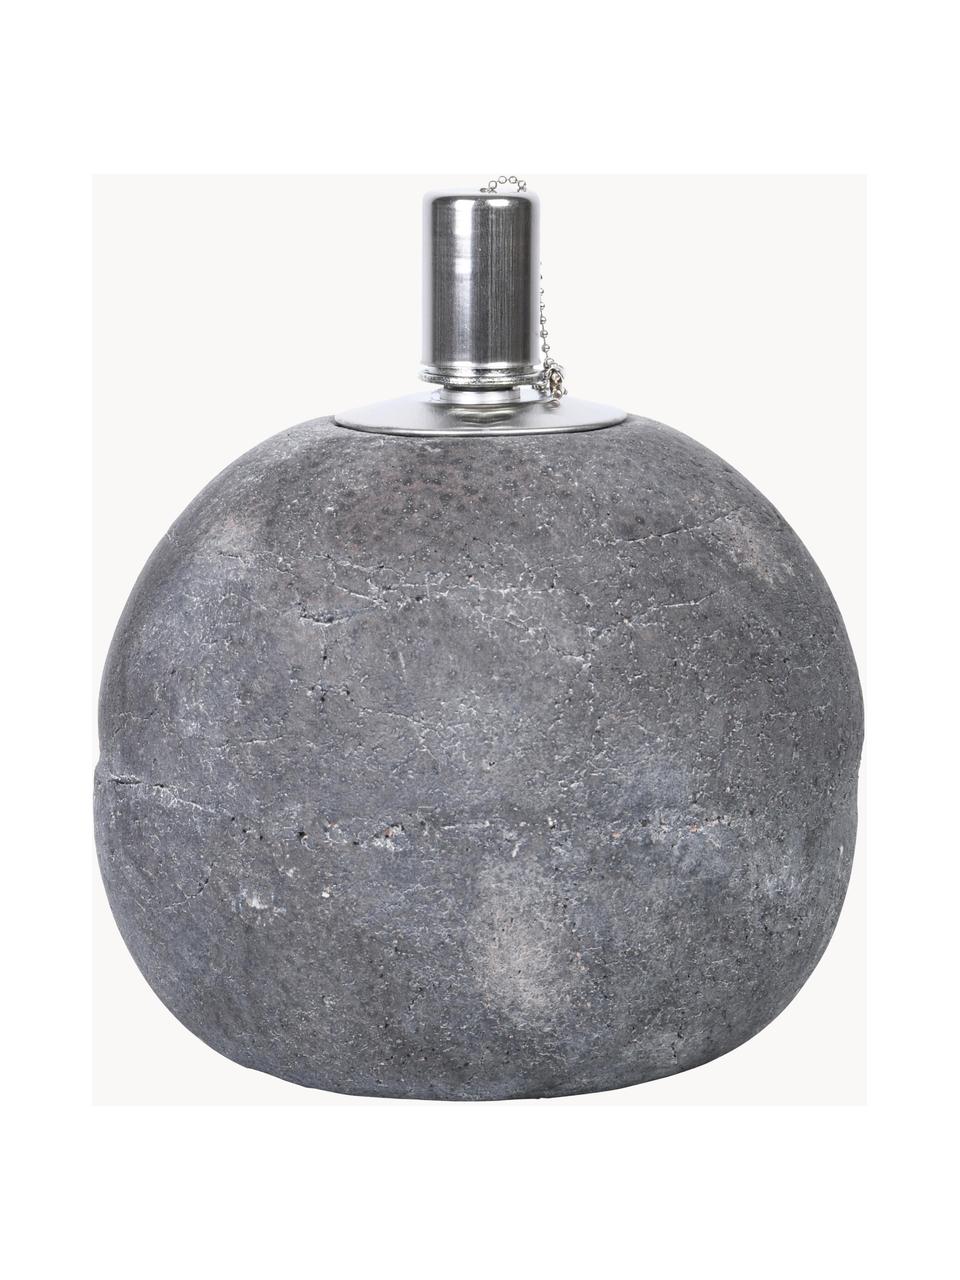 Olielamp Raw van beton, Beton, edelstaal, Grijs, zilverkleurig, Ø 14 x H 17 cm